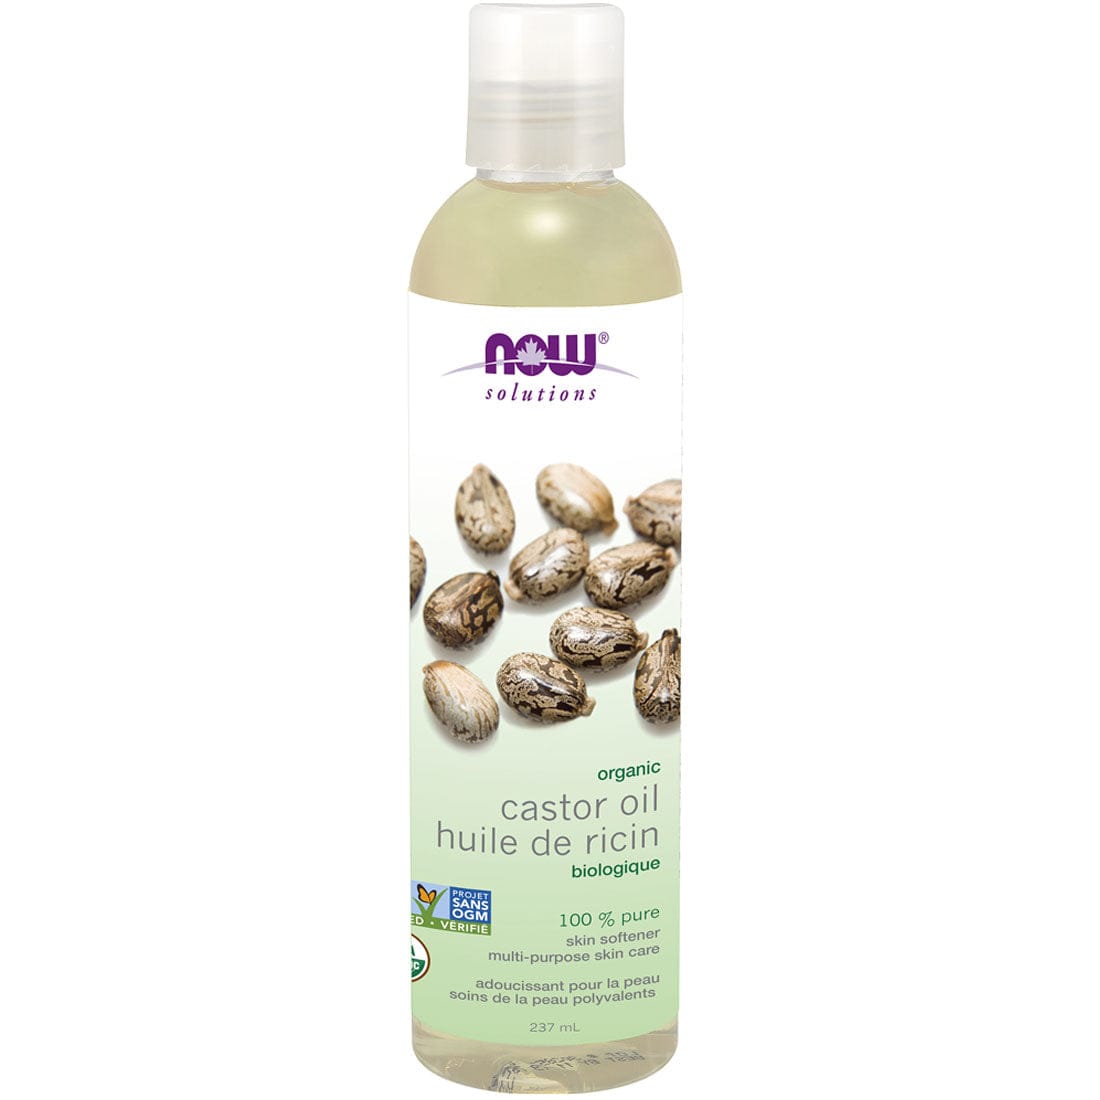 NOW Organic Castor Oil (100% Natural Skin Softener), 237 ml